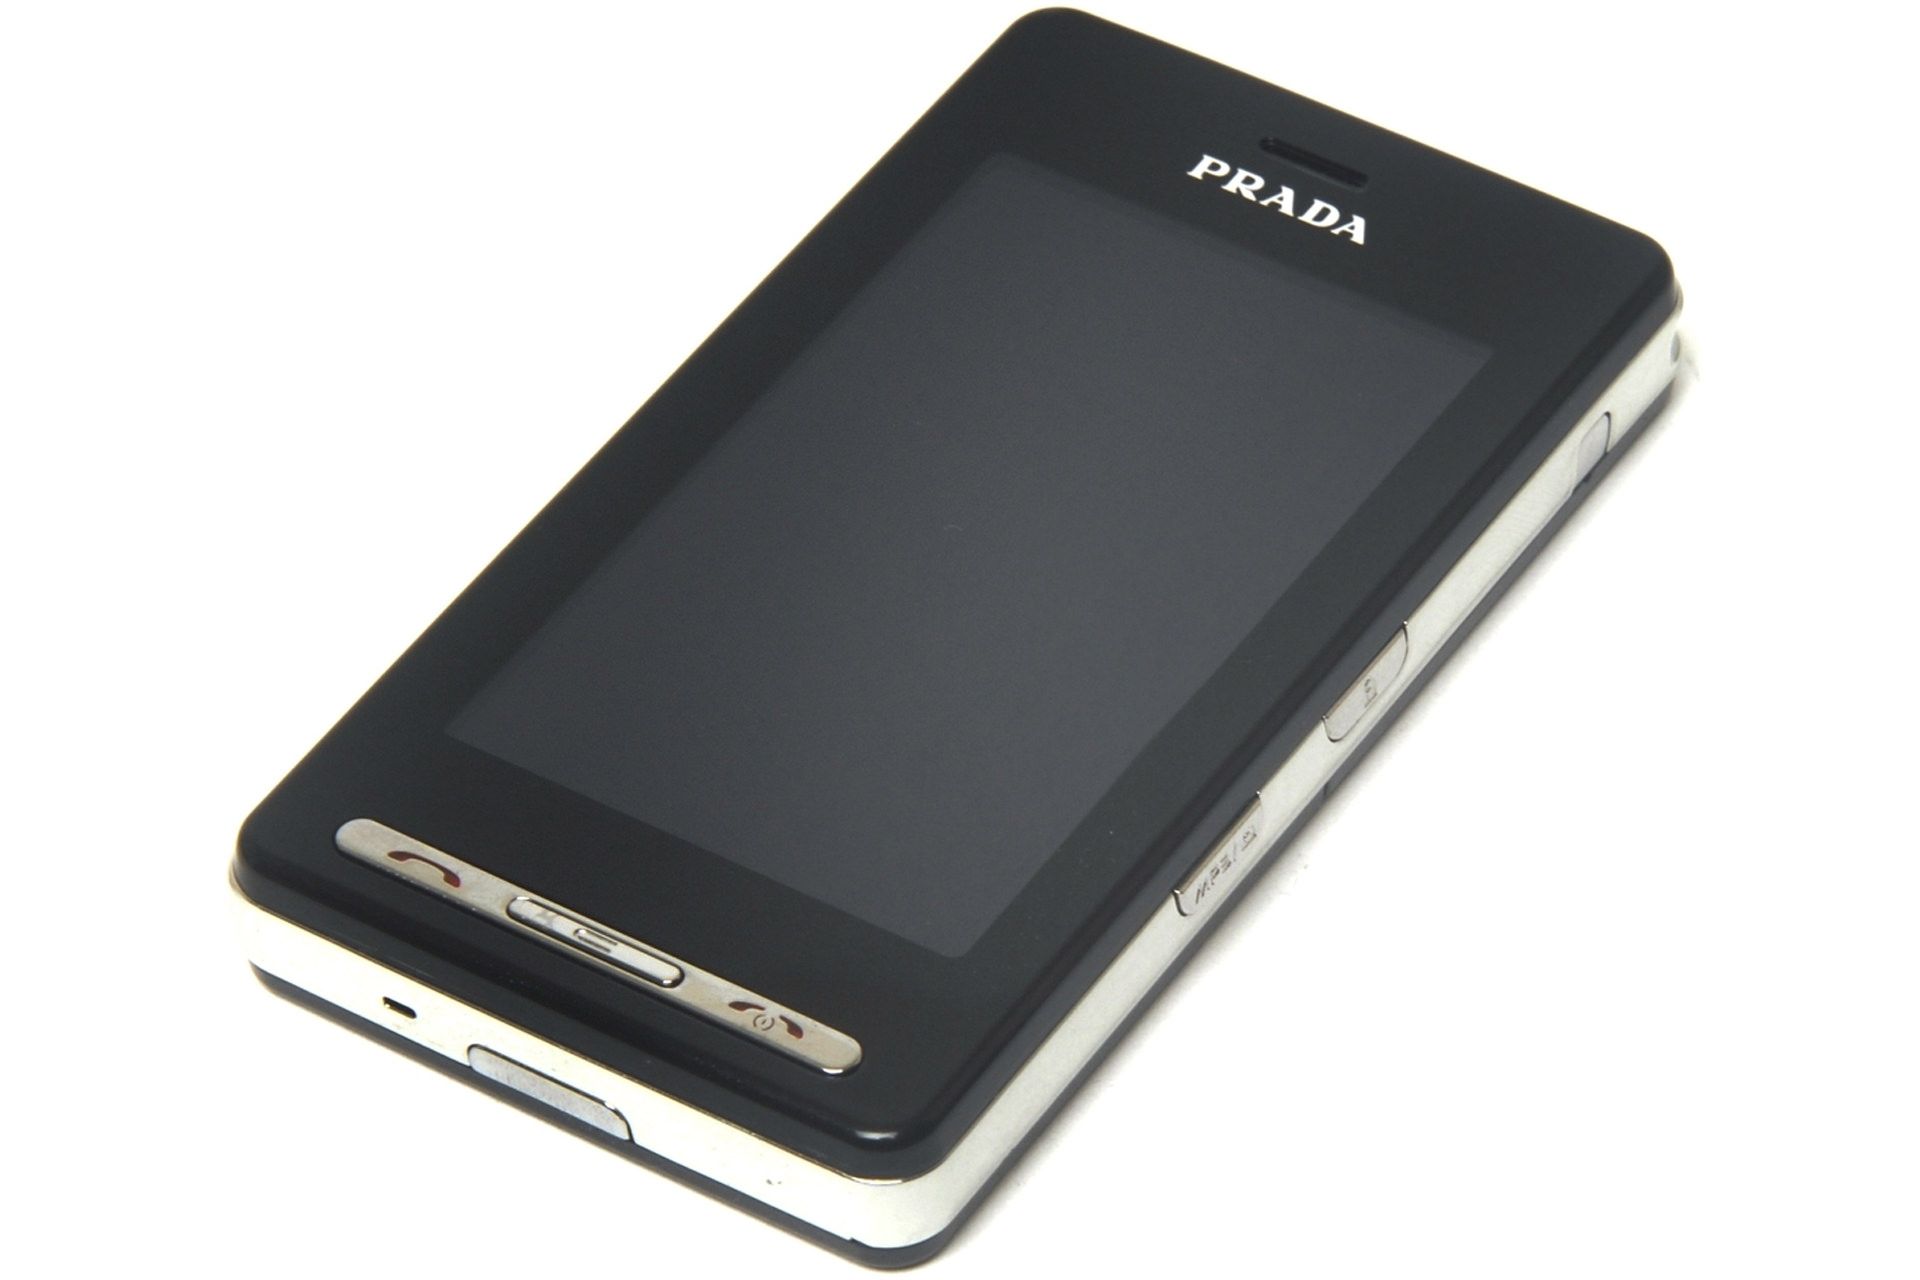 گوشی ال جی پرادا / LG Prada مدل مشکی از نمای سه رخ